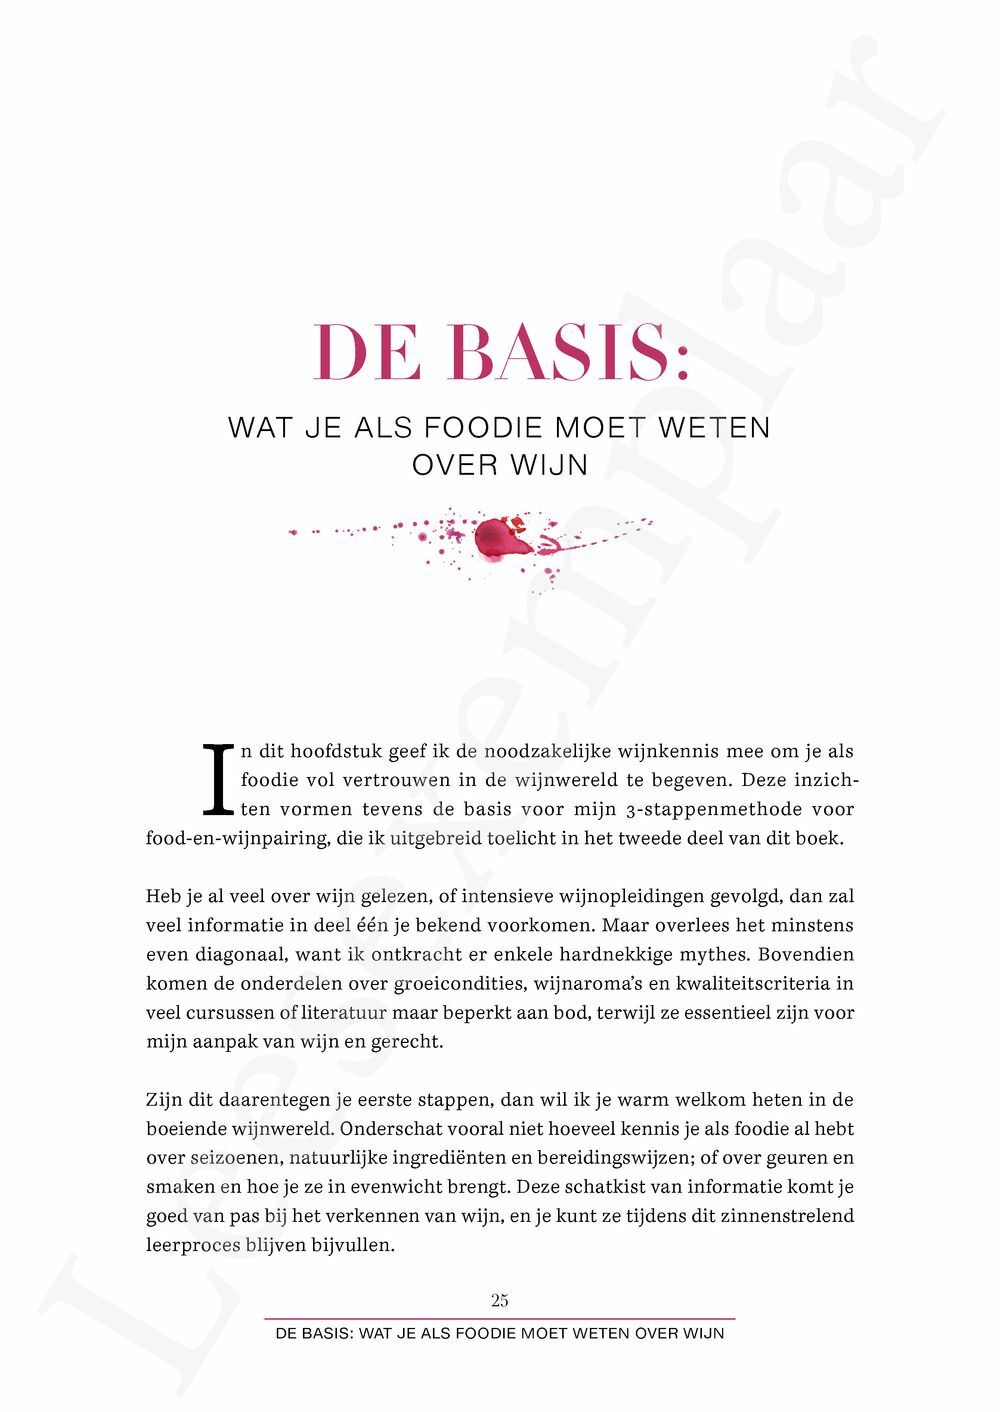 Preview: Wijnboek voor foodies